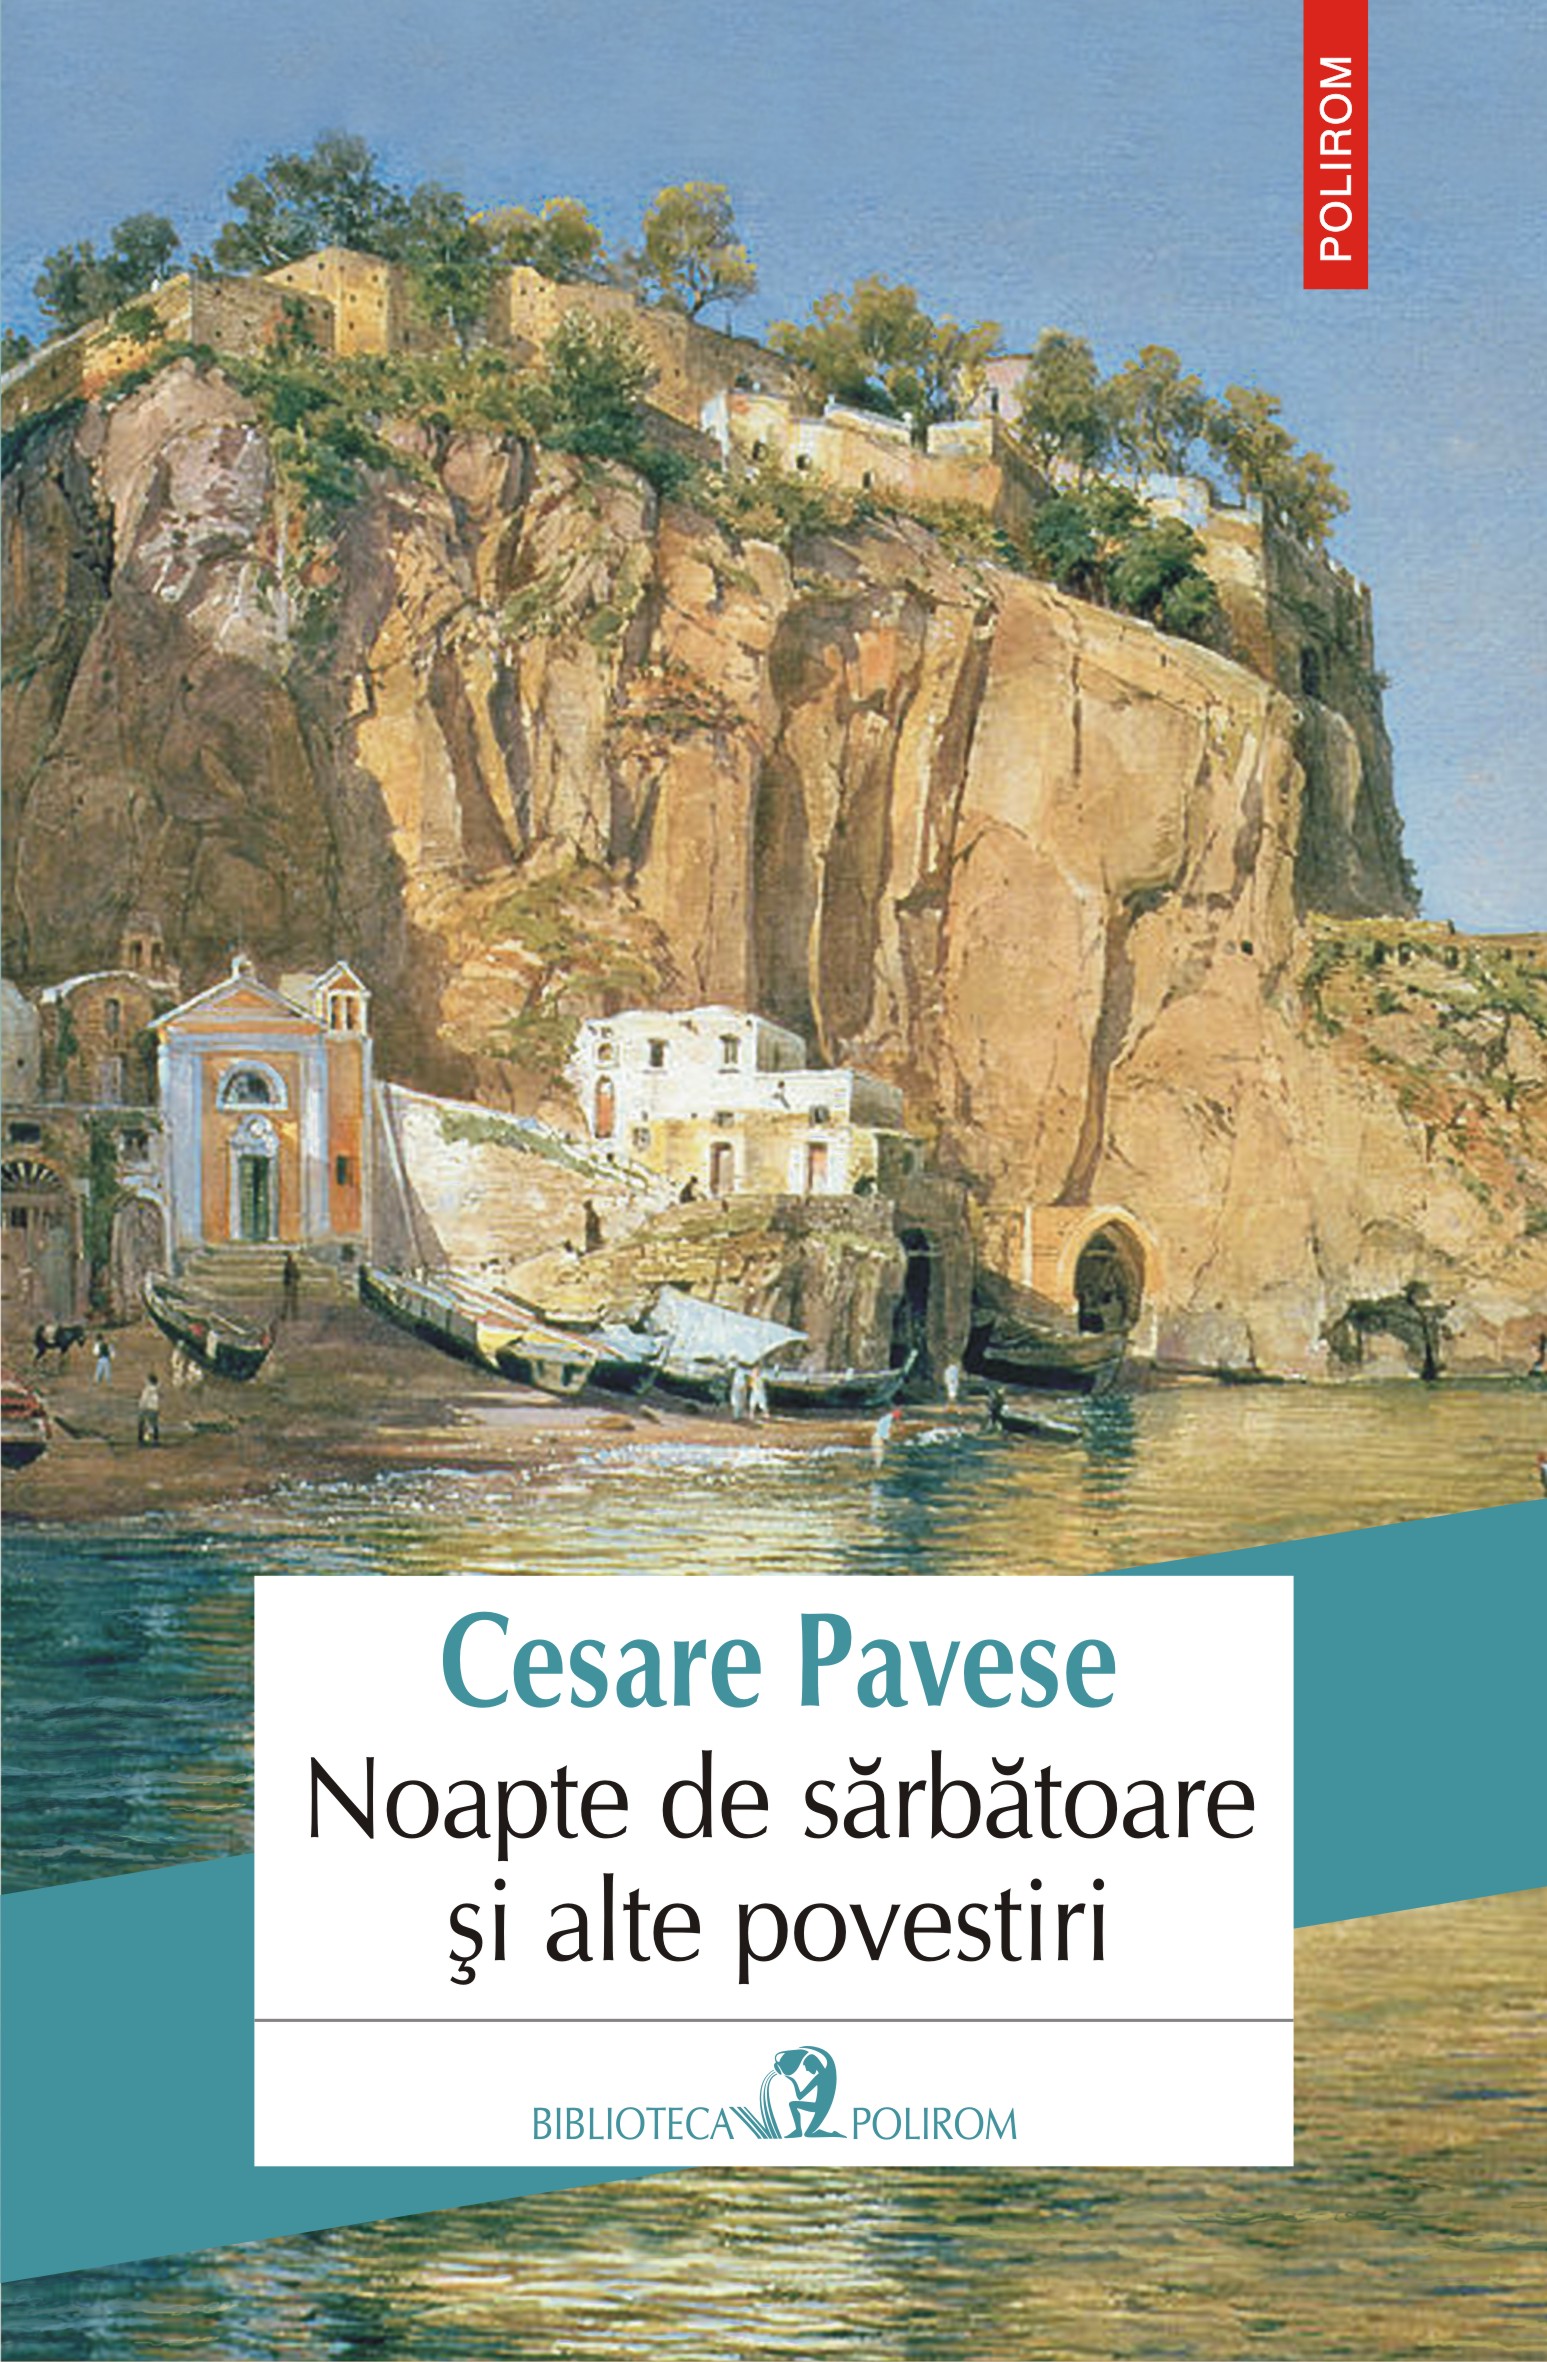 eBook Noapte de sarbatoare si alte povestiri - Cesare Pavese